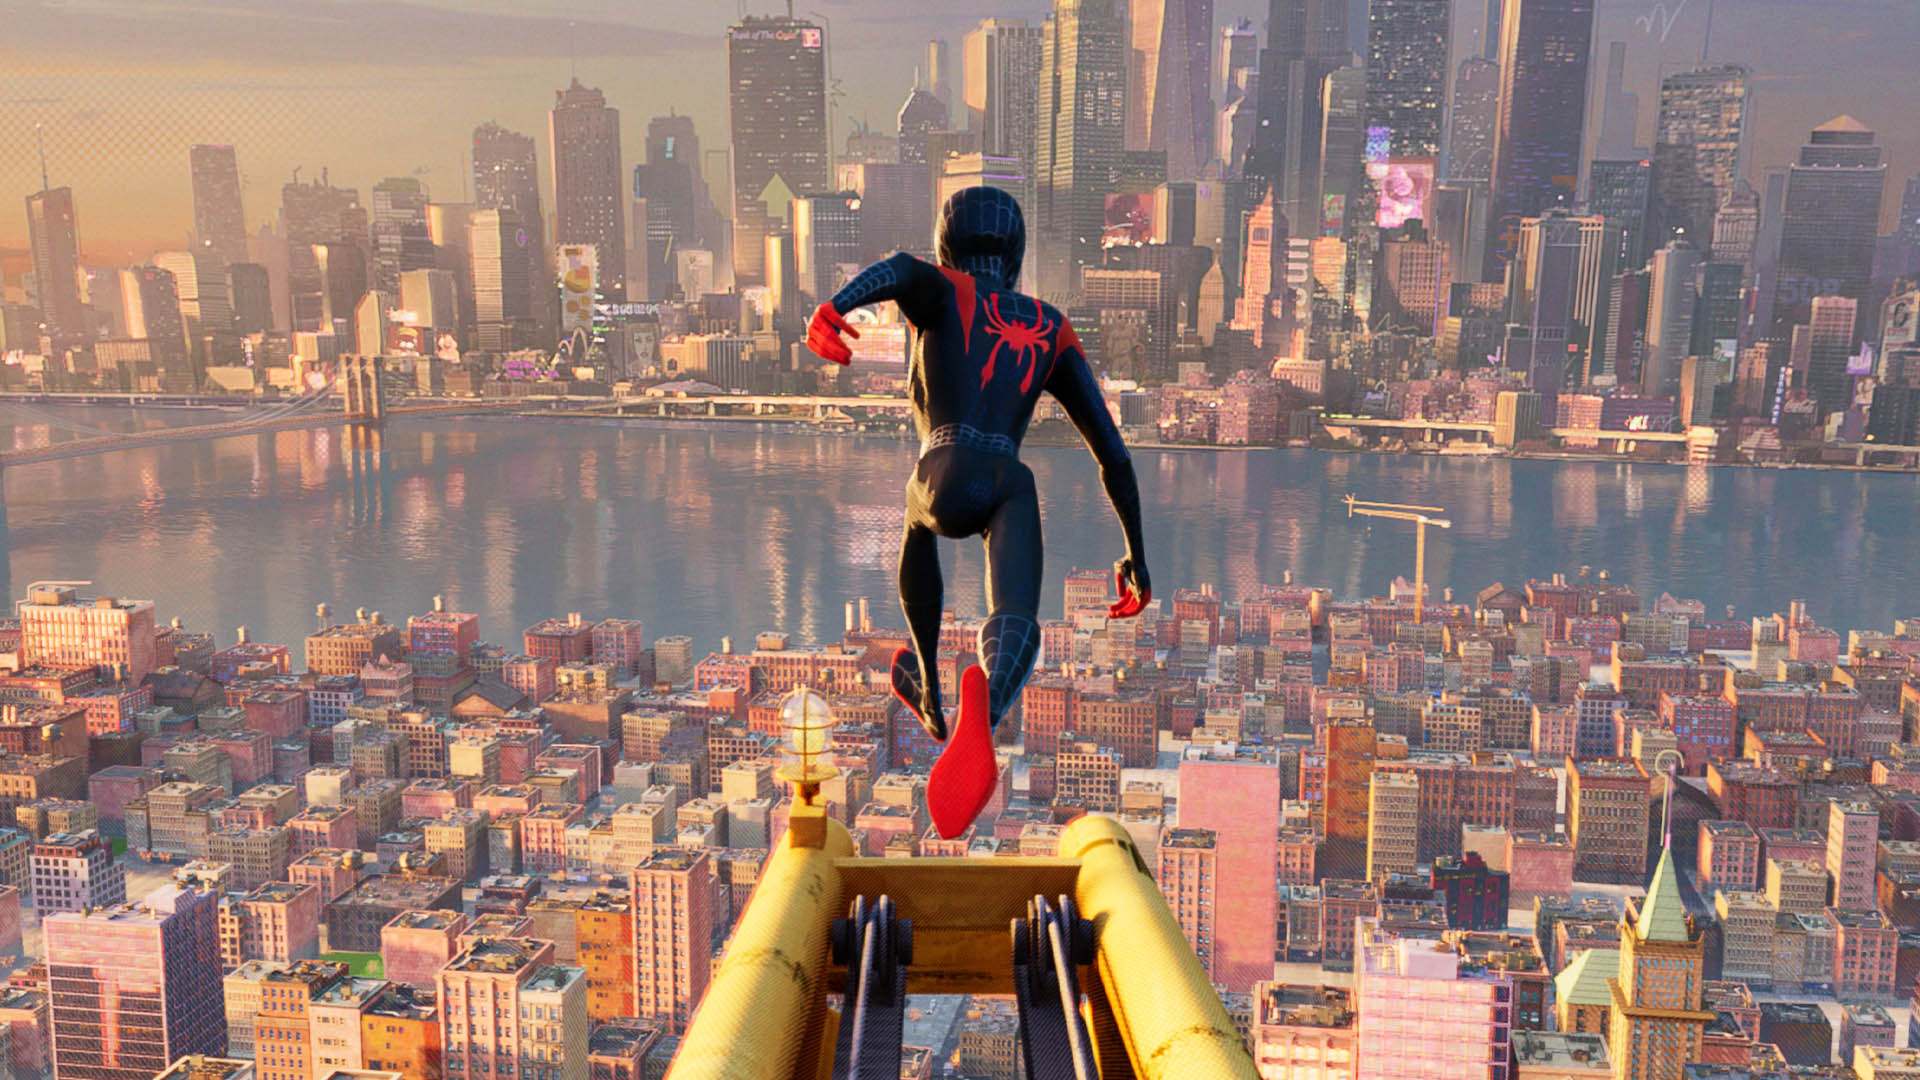 تصویری از پشت سر مایلز مورالس در شهر نیویورک در انیمیشن Spider-Man: Into the Spider-Verse